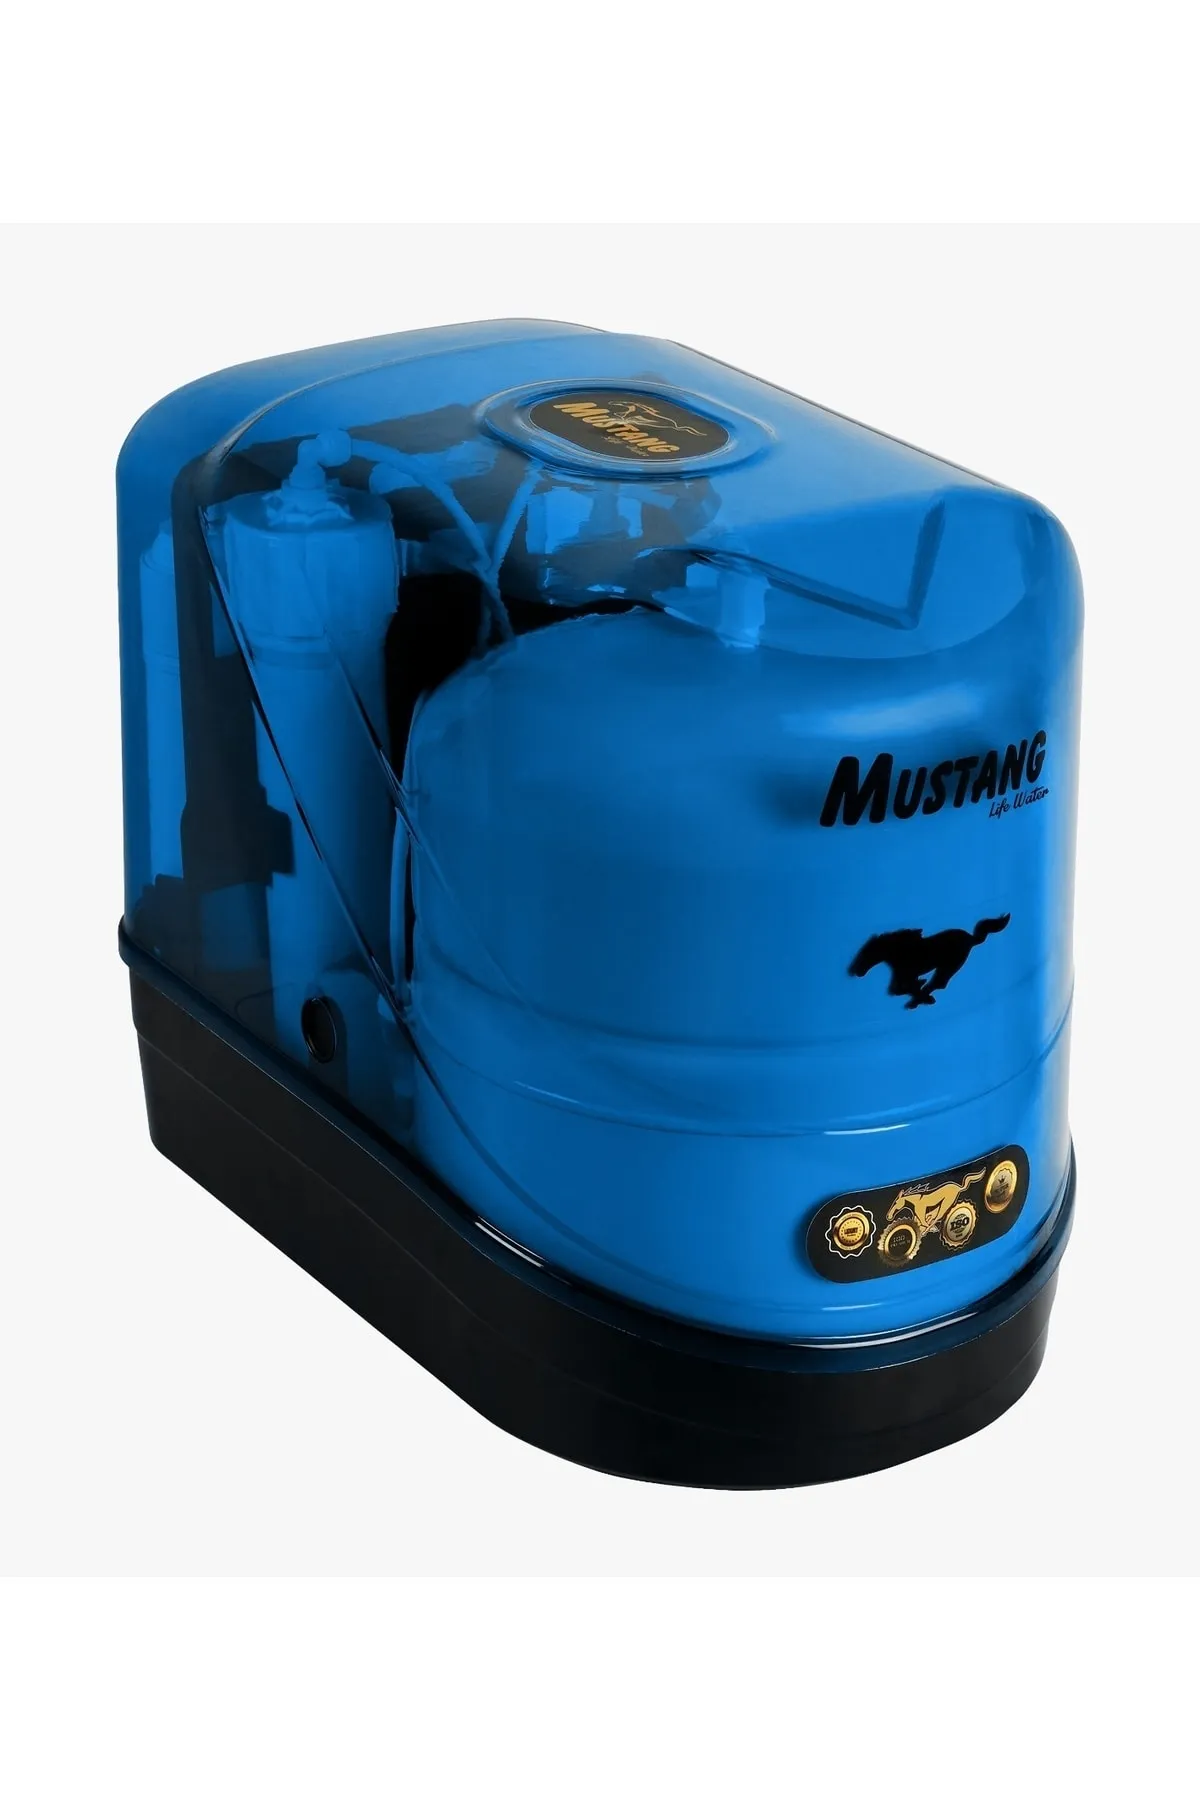 Mustang Life Water Mavi 5 Aşamalı Su Arıtma Cihazı